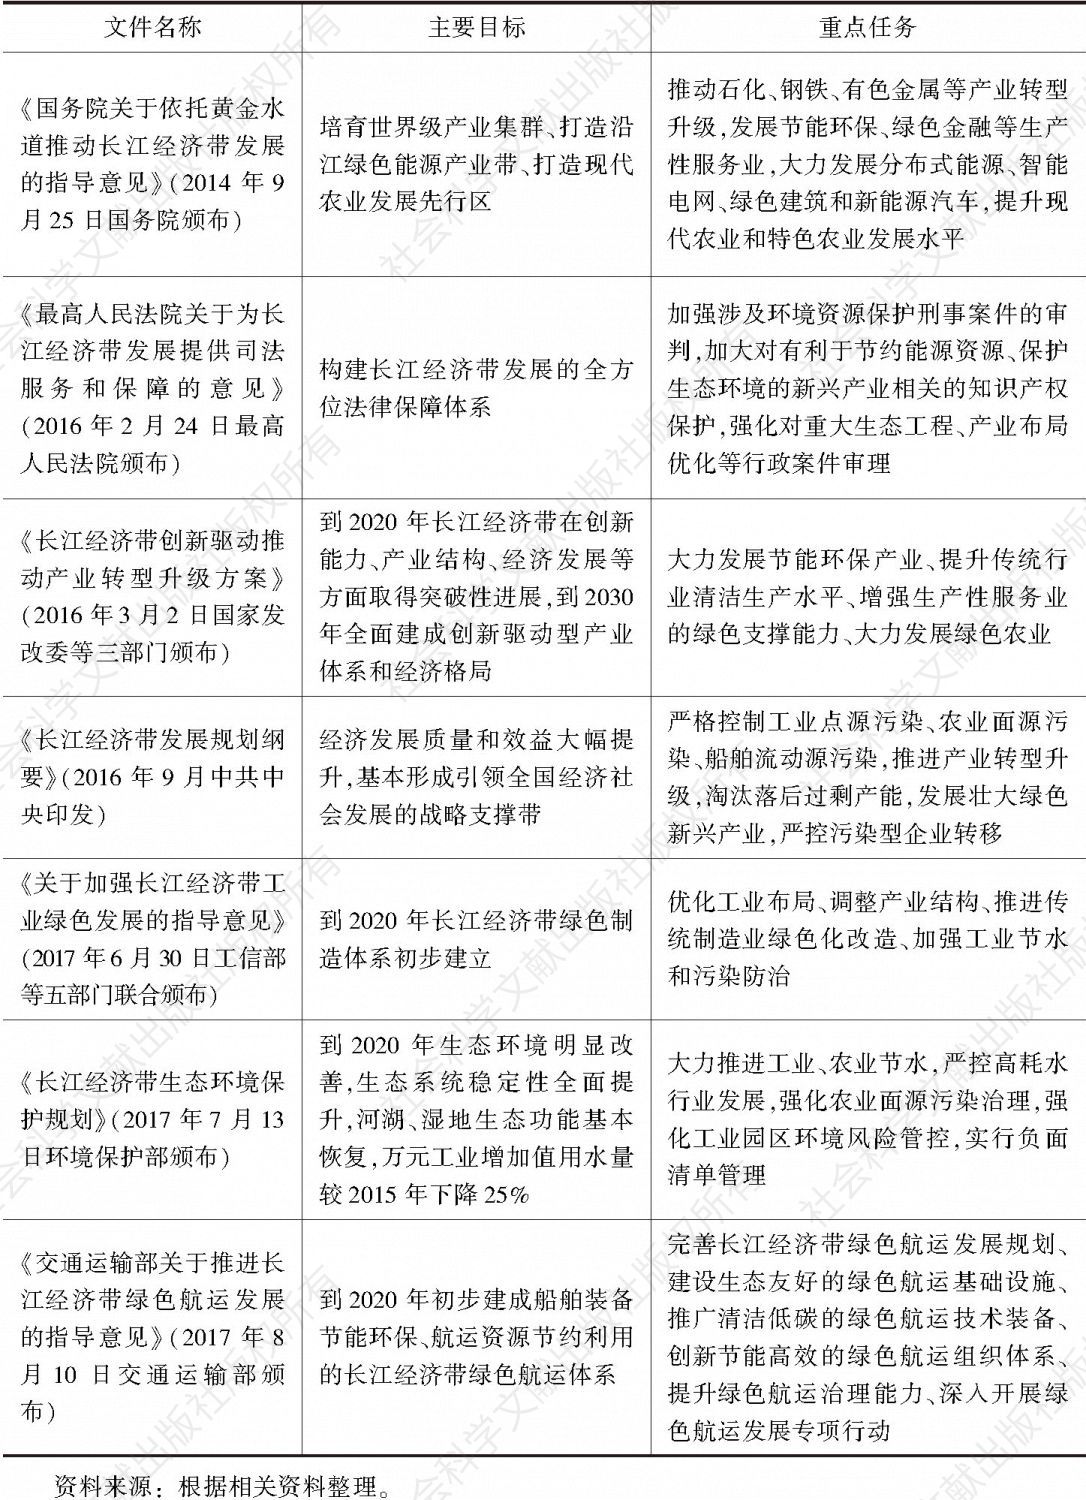 表2 国家出台的关于长江经济带产业绿色发展的相关规划、政策